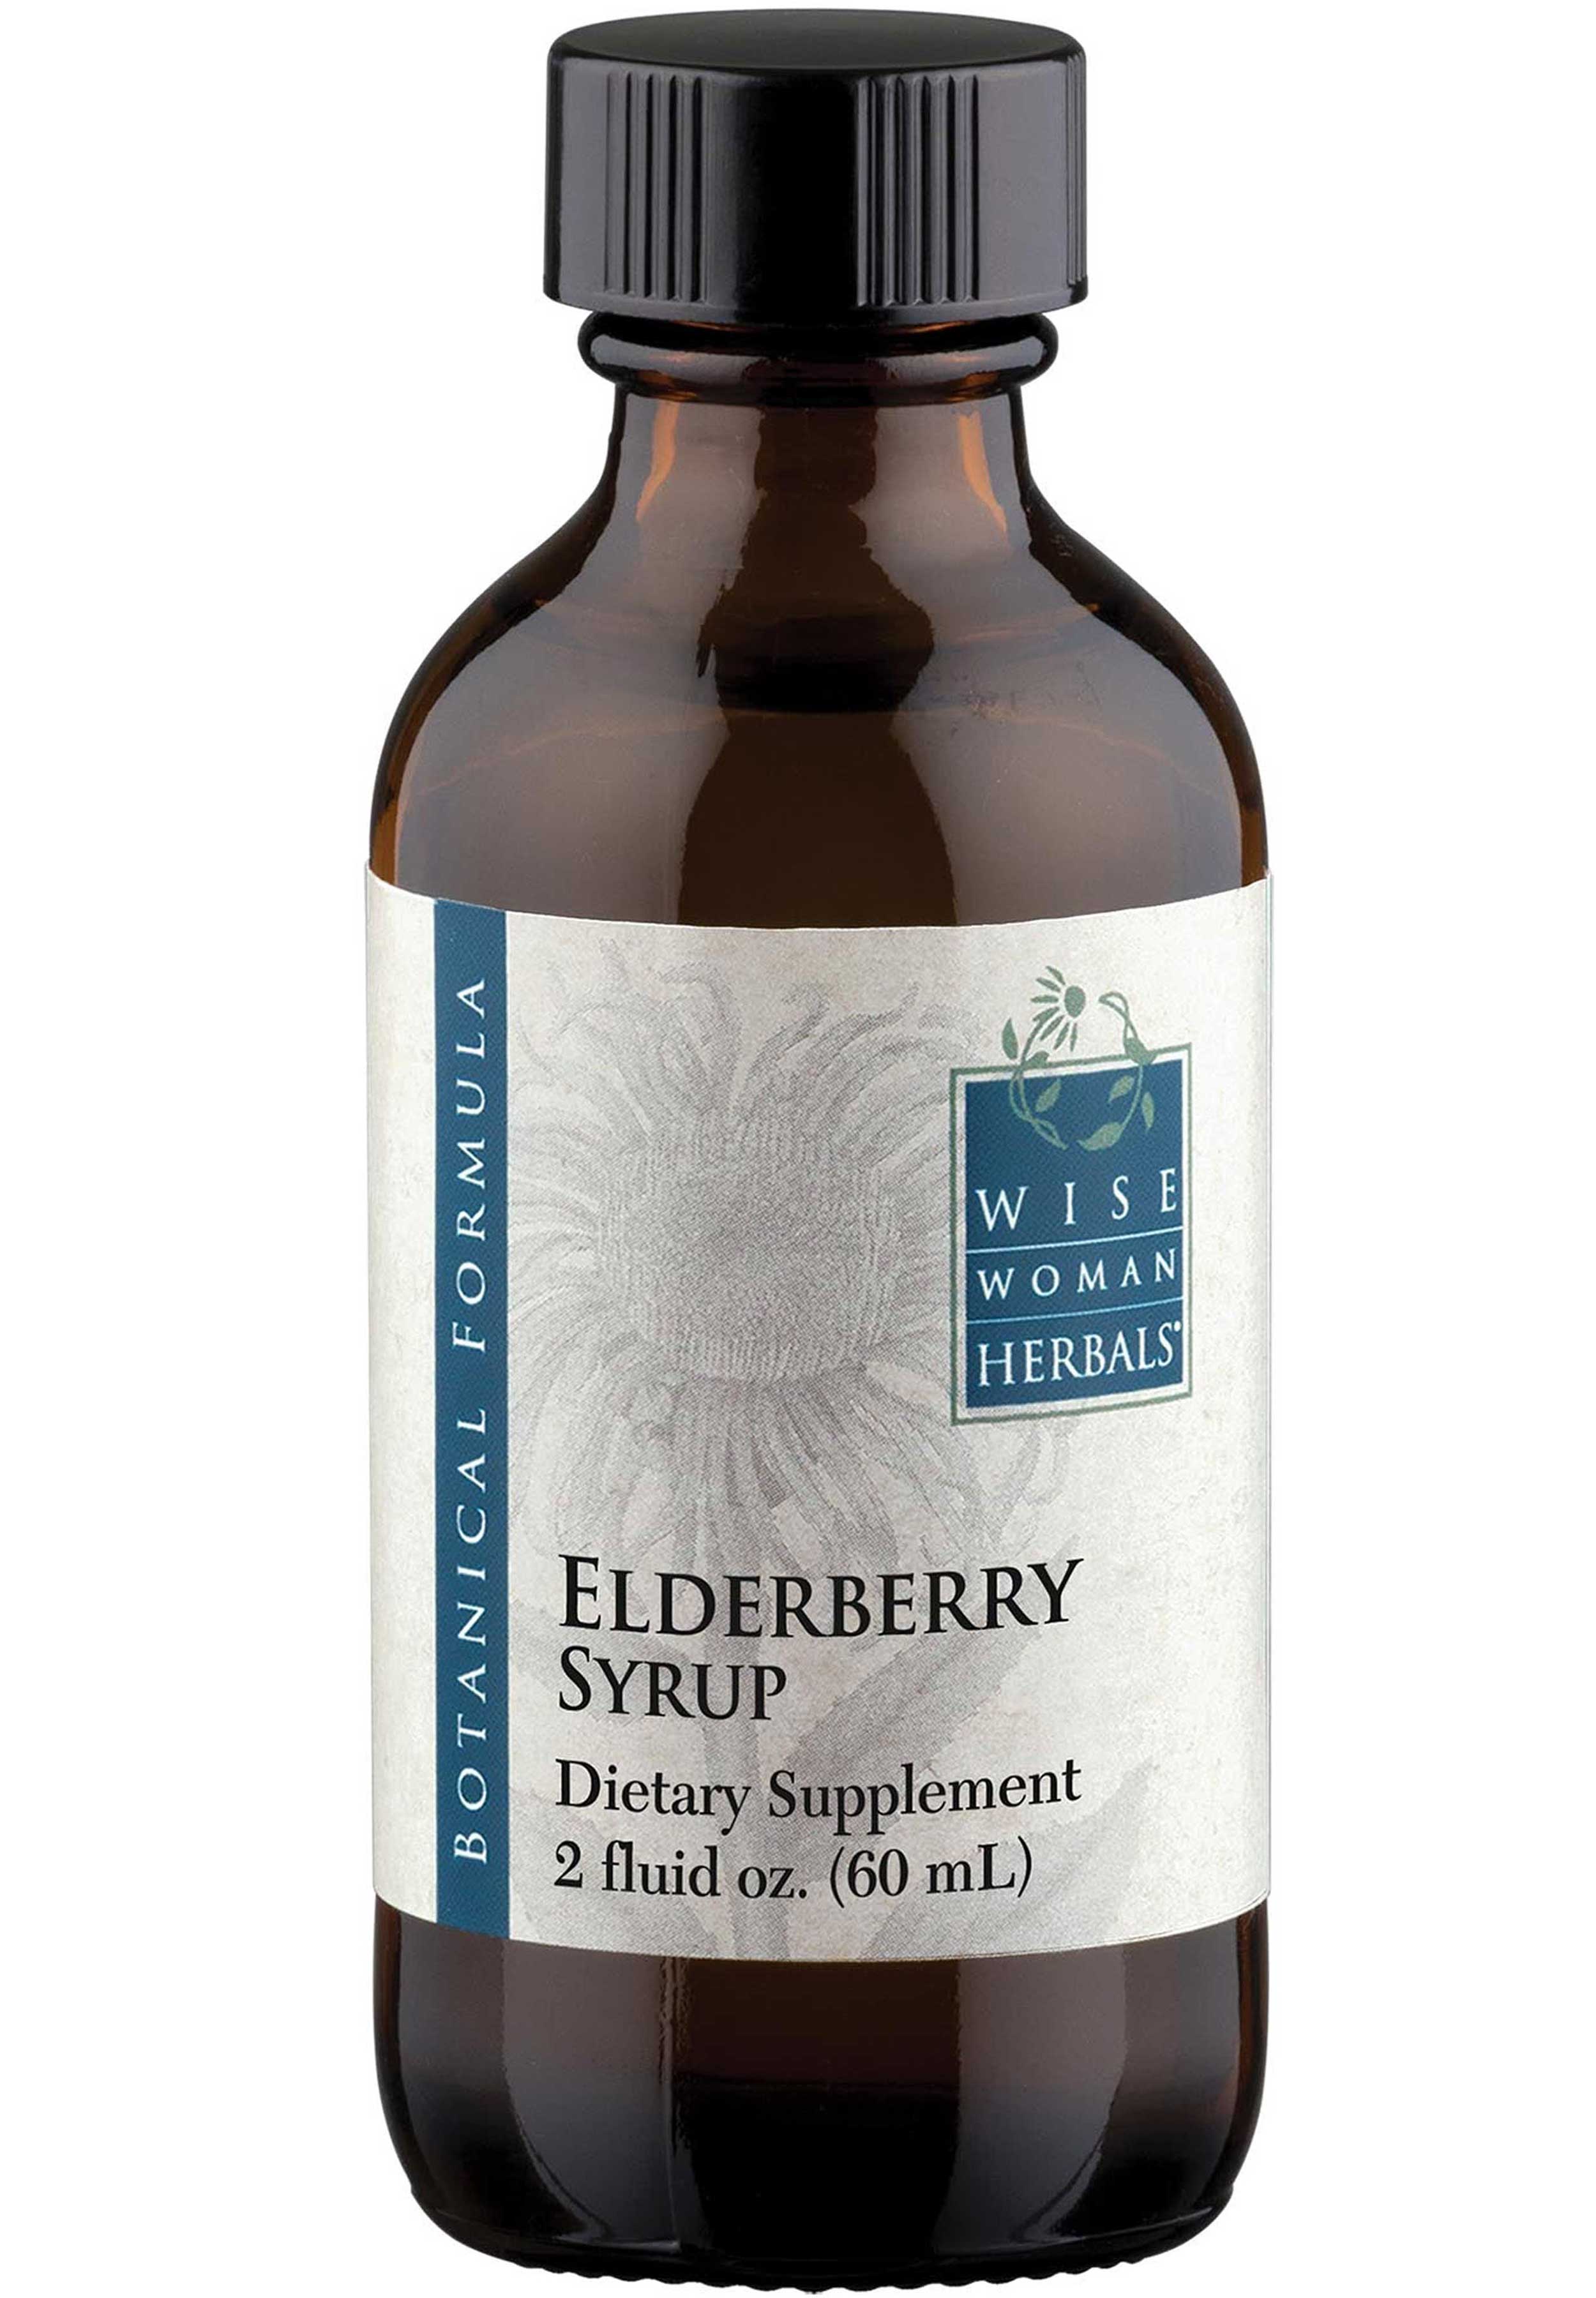 Wise Woman Herbals Elderberry Syrup